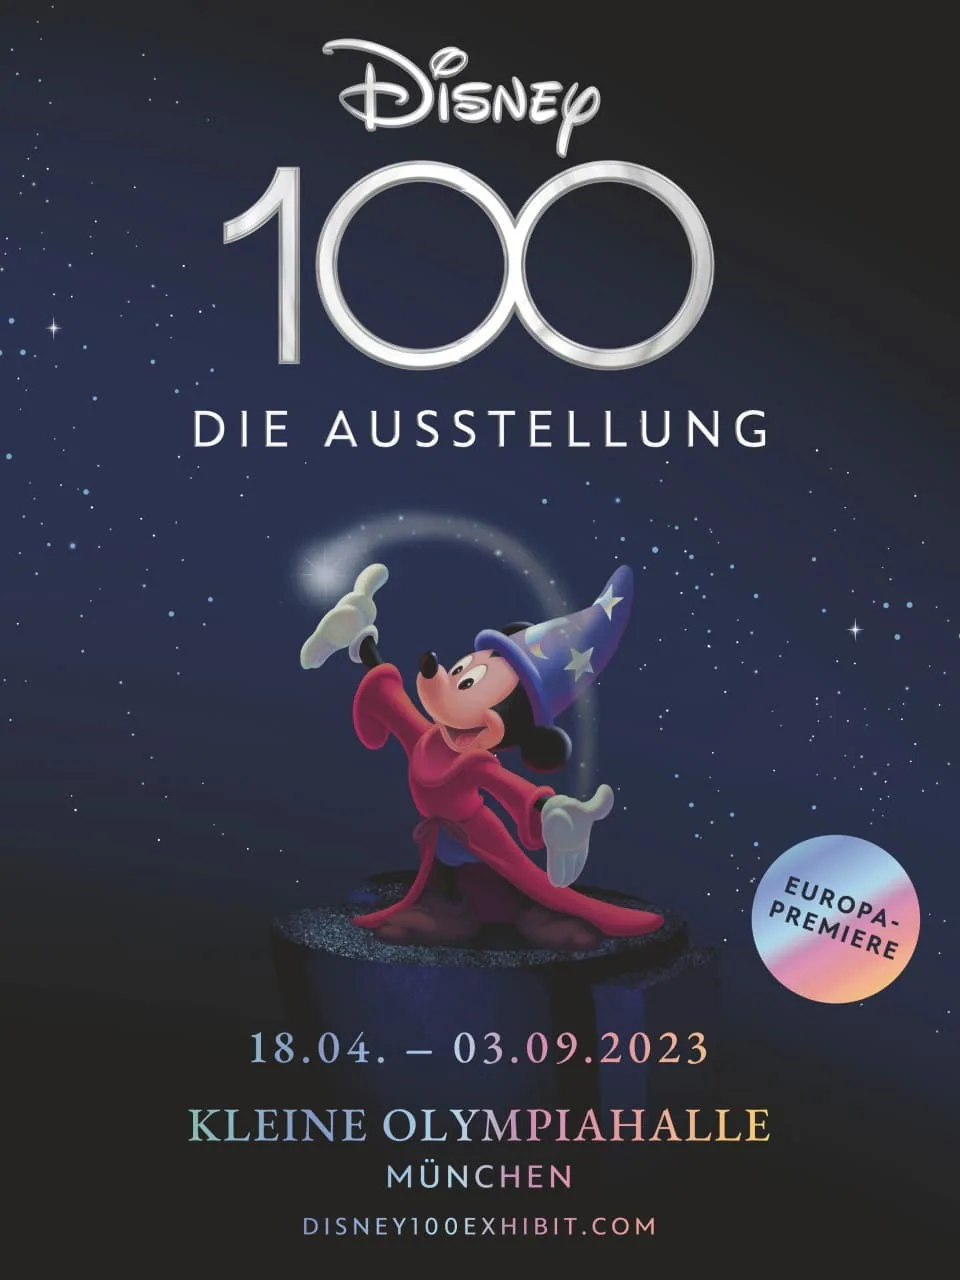 1 Disney 100 exhibition